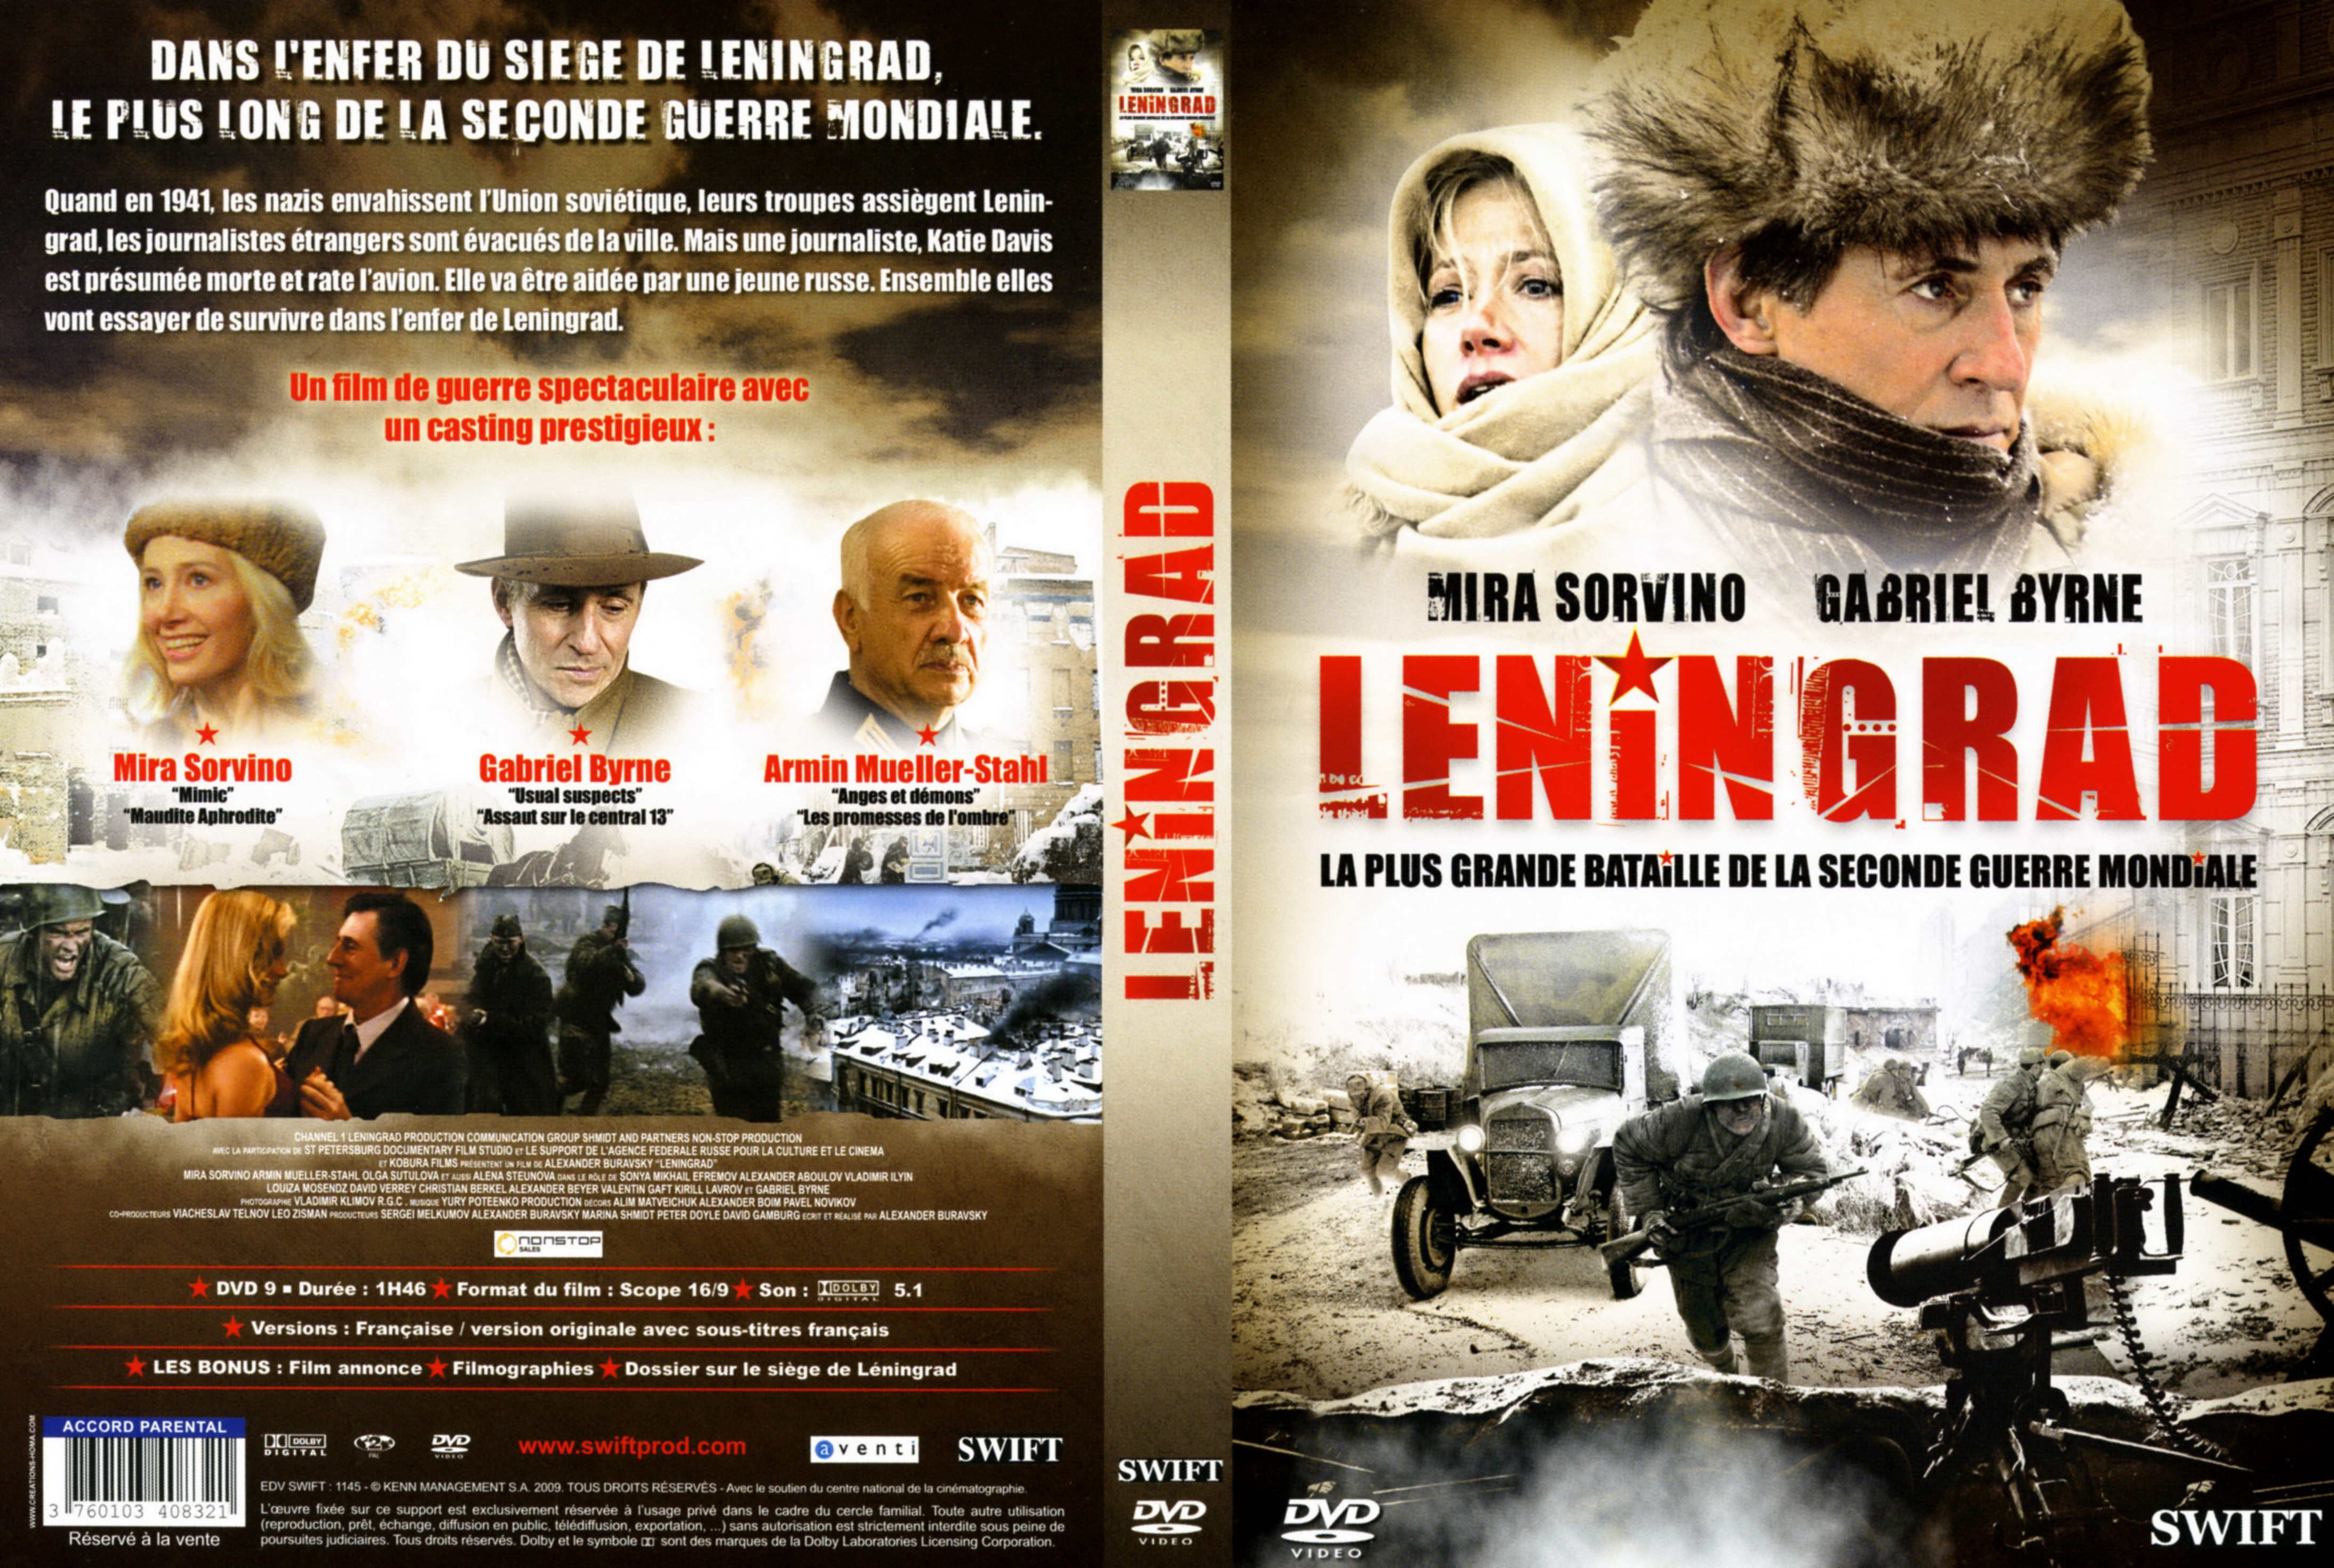 Jaquette DVD Leningrad v2